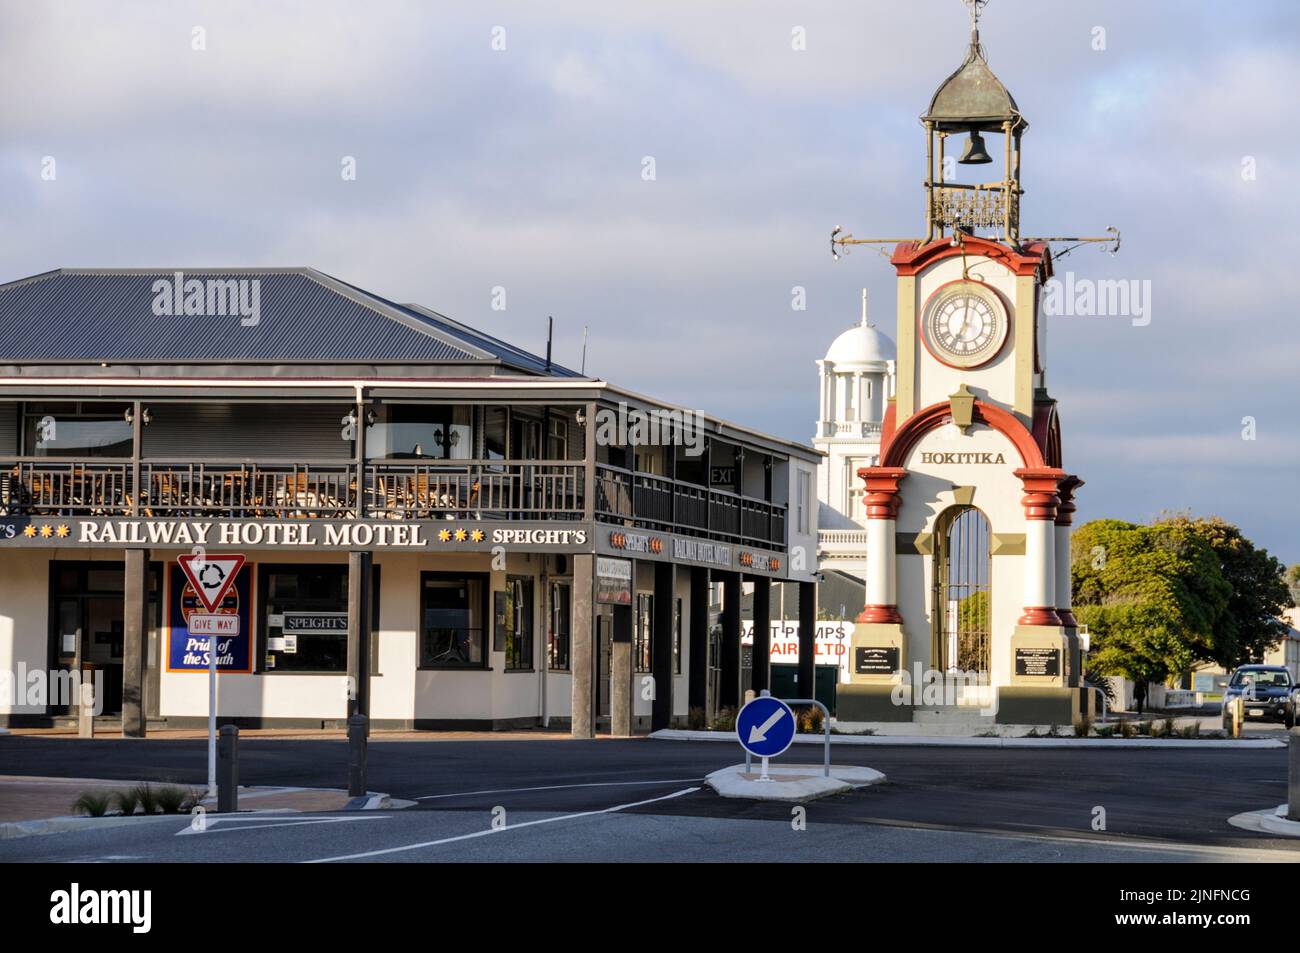 La Torre del Reloj está en una rotonda en Well Street, Hokitika en la costa oeste de la Isla Sur de Nueva Zelanda, frente al Mar de Tasmania. Hokitika es el centr Foto de stock